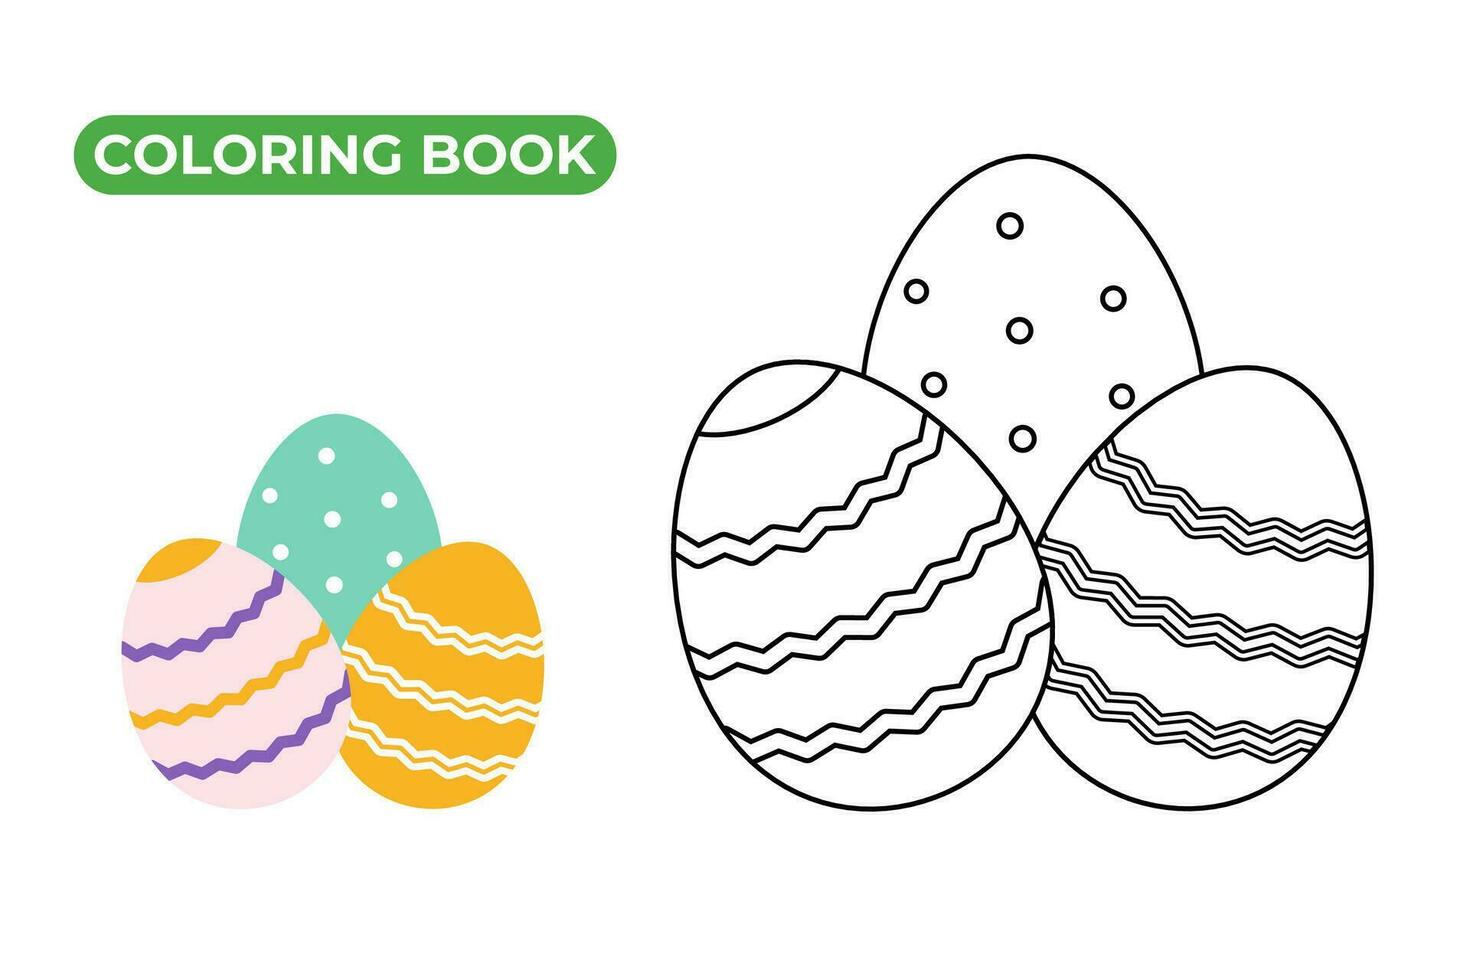 Ostern Färbung Buch. Vektor Illustration. schwarz und Weiß linear Zeichnung von Ostern Eier mit festlich Dekorationen. Urlaub Objekte Satz.